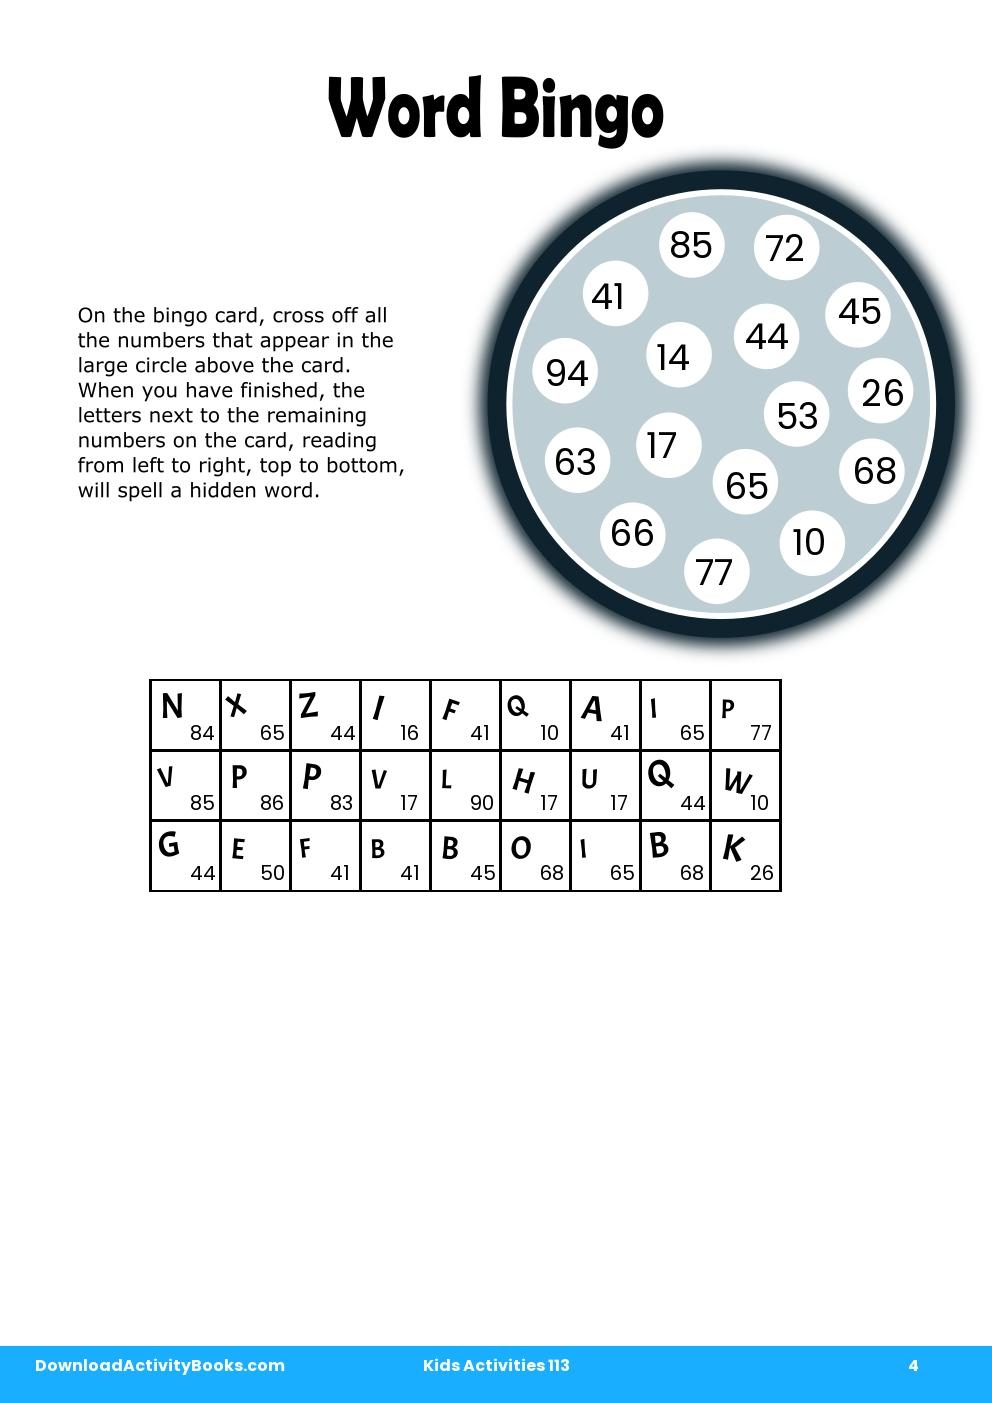 Word Bingo in Kids Activities 113